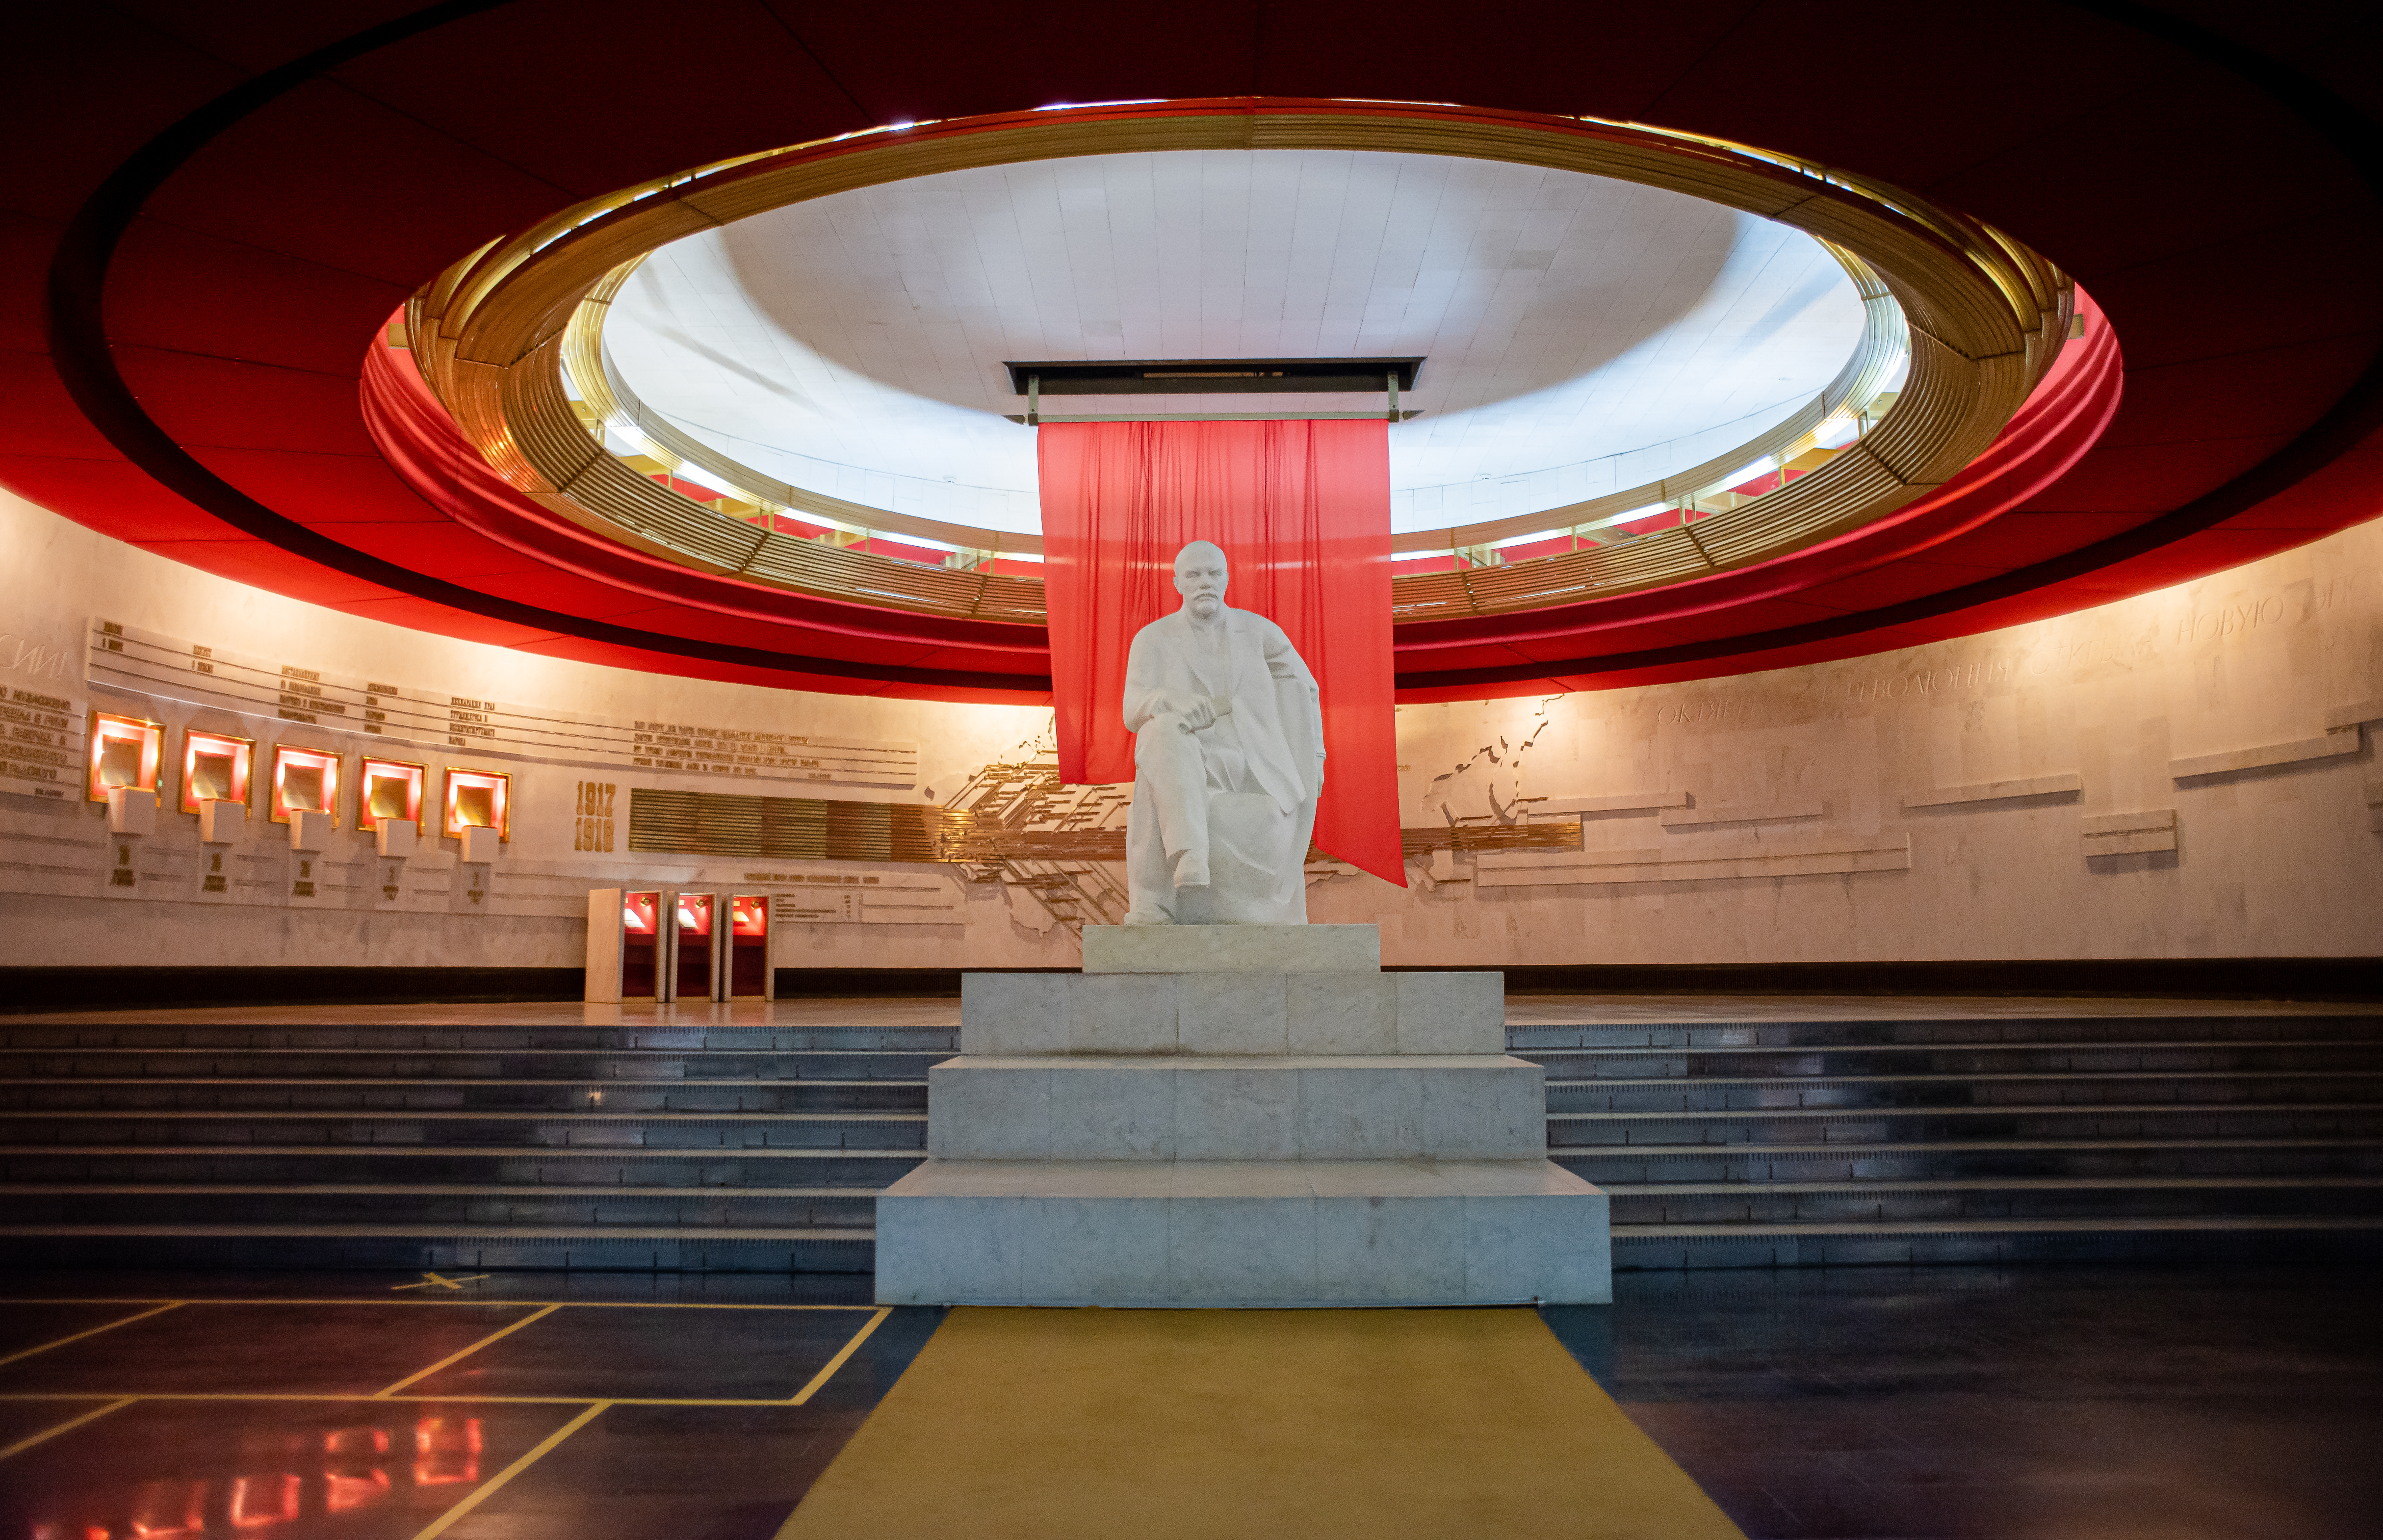 Музей В.И. Ленина был построен на территории музея-заповедника в конце 80-х годов прошлого столетия. Экспозиция рассказывает о жизни и работе вождя, об истории России с 1917 по 1924 год